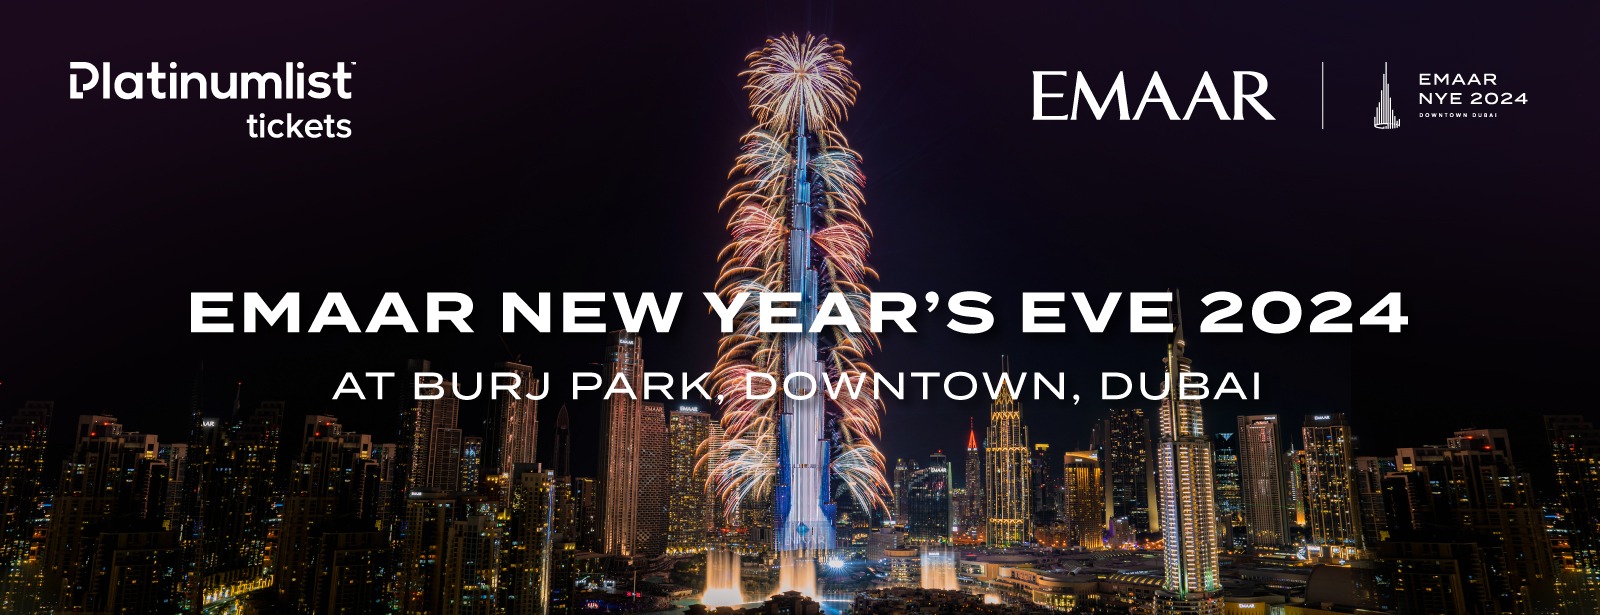 Emaar New Year’s Eve 2024 at Burj Park, Downtown - Coming Soon in UAE